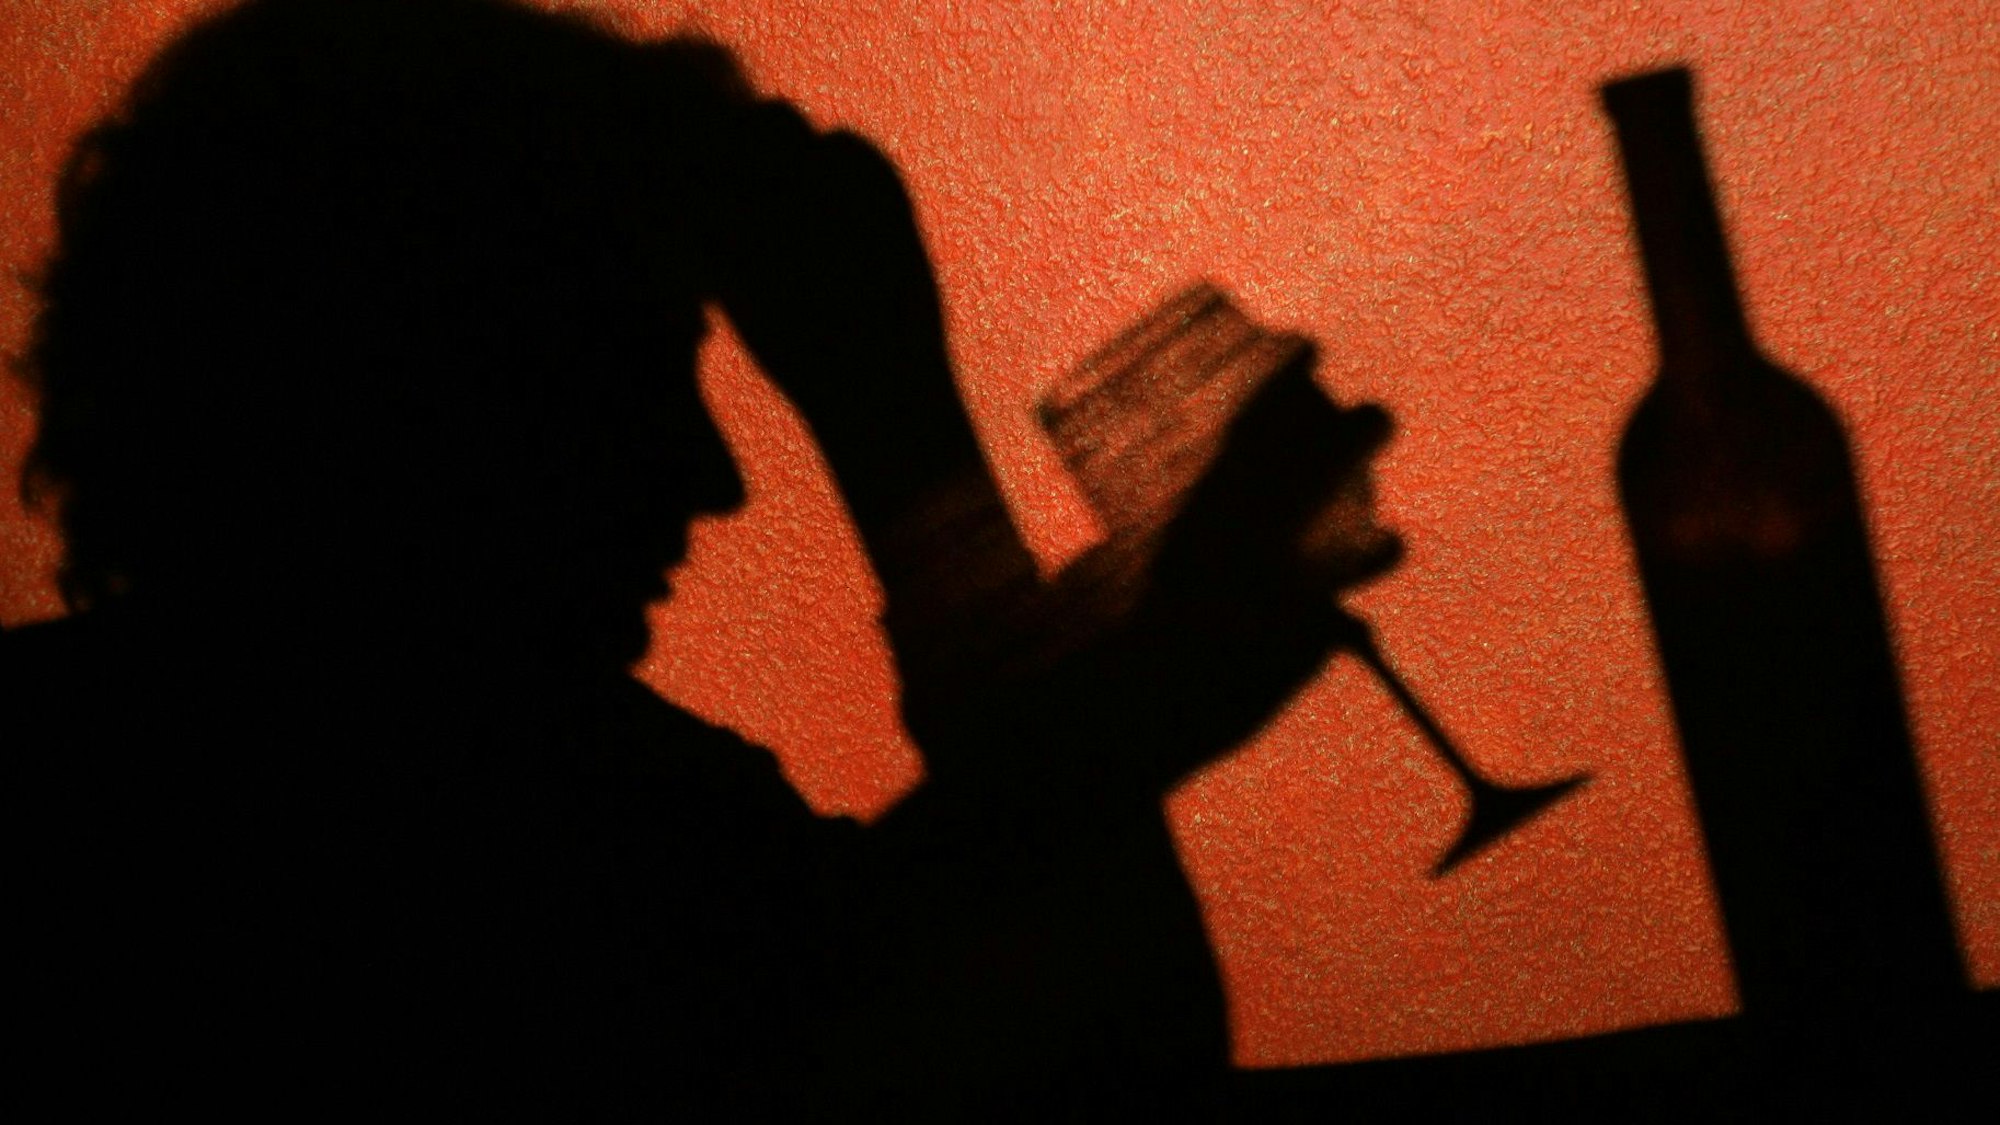 Der Schatten einer Frau, die ein Glas Wein trinkt, ist an der Wand in einer Kneipe in Frankfurt (Oder) zu erkennen.  Laut einer aktuellen Studie sterben Alkoholabhängige deutlich früher.